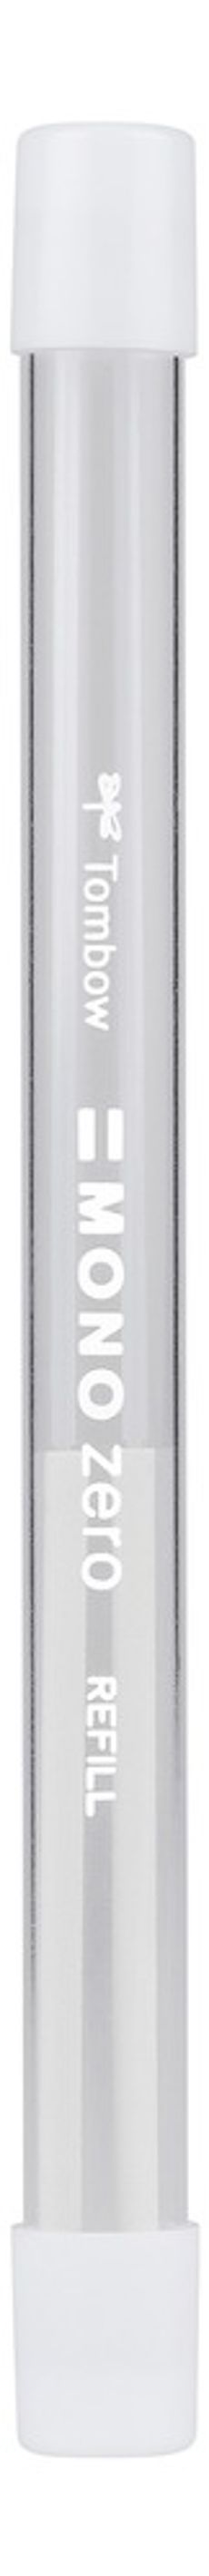 Pack of 10 Tombow ER-KUR Refill for Precision Eraser Mono Zero Round Tip Diameter 2.3 mm